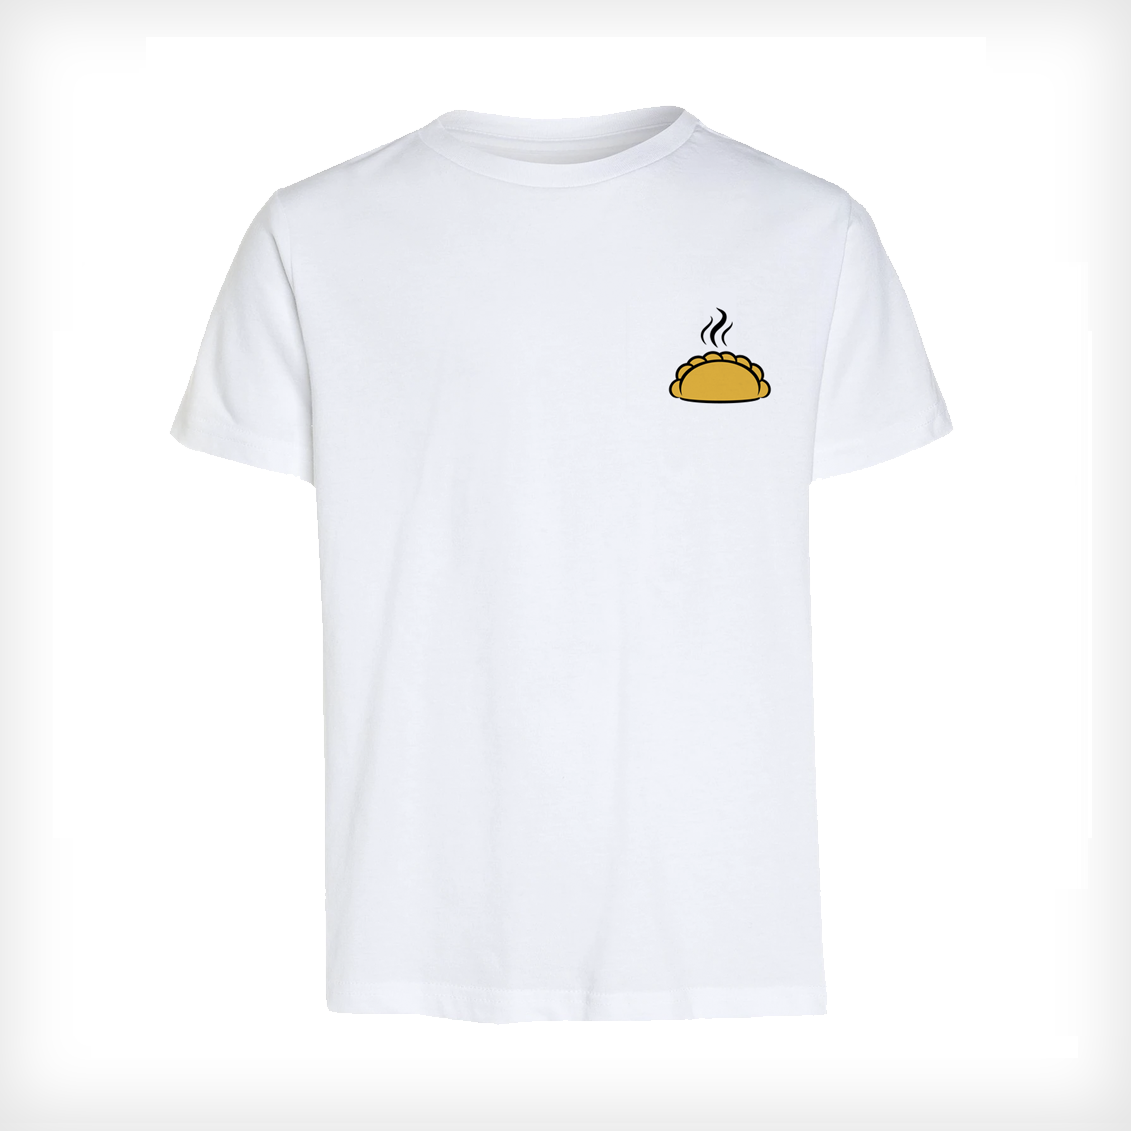 Maui Empanadas T-Shirt